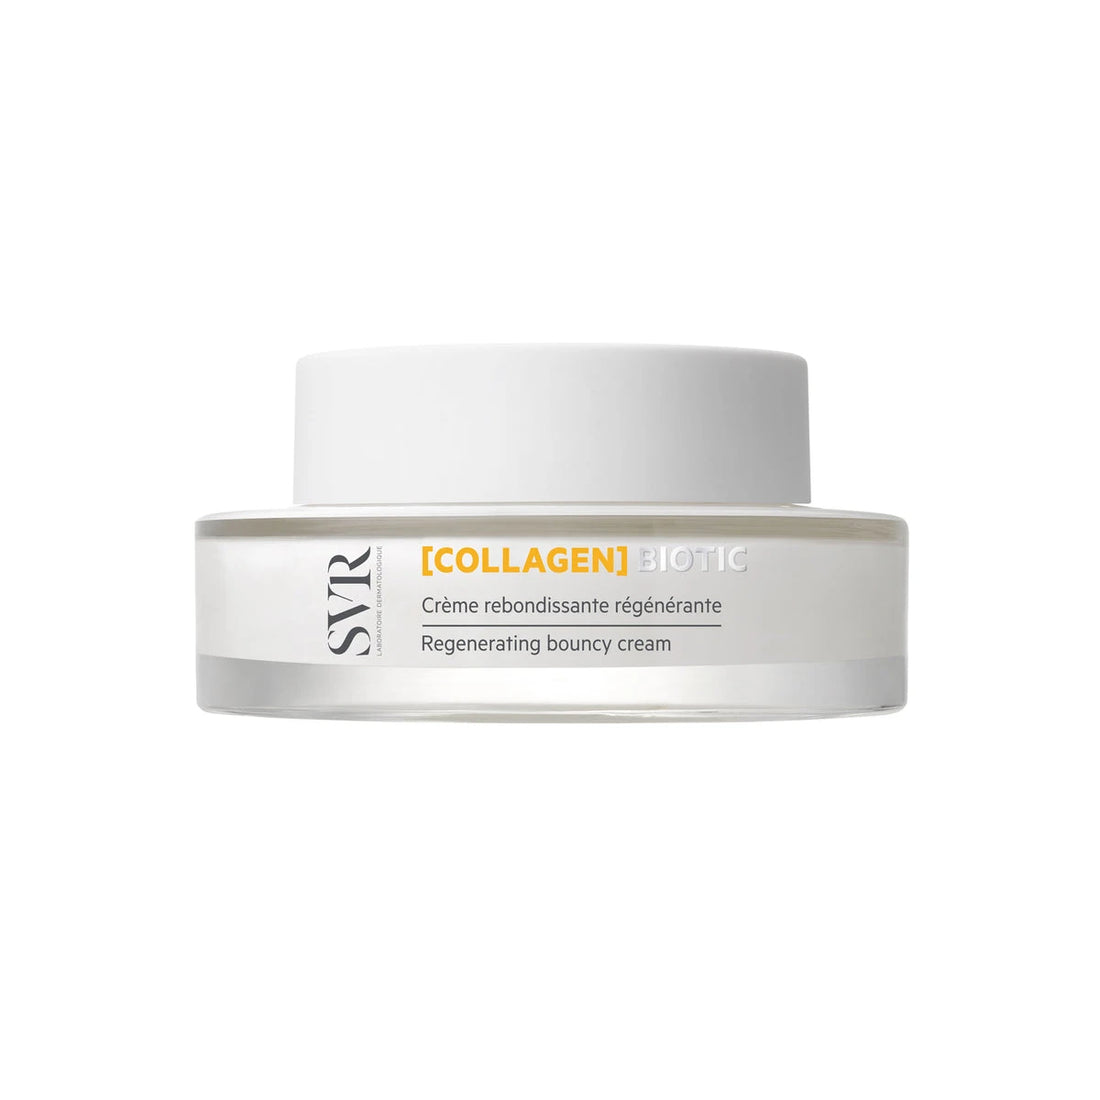 SVR Collagen Biotic cream 50ml